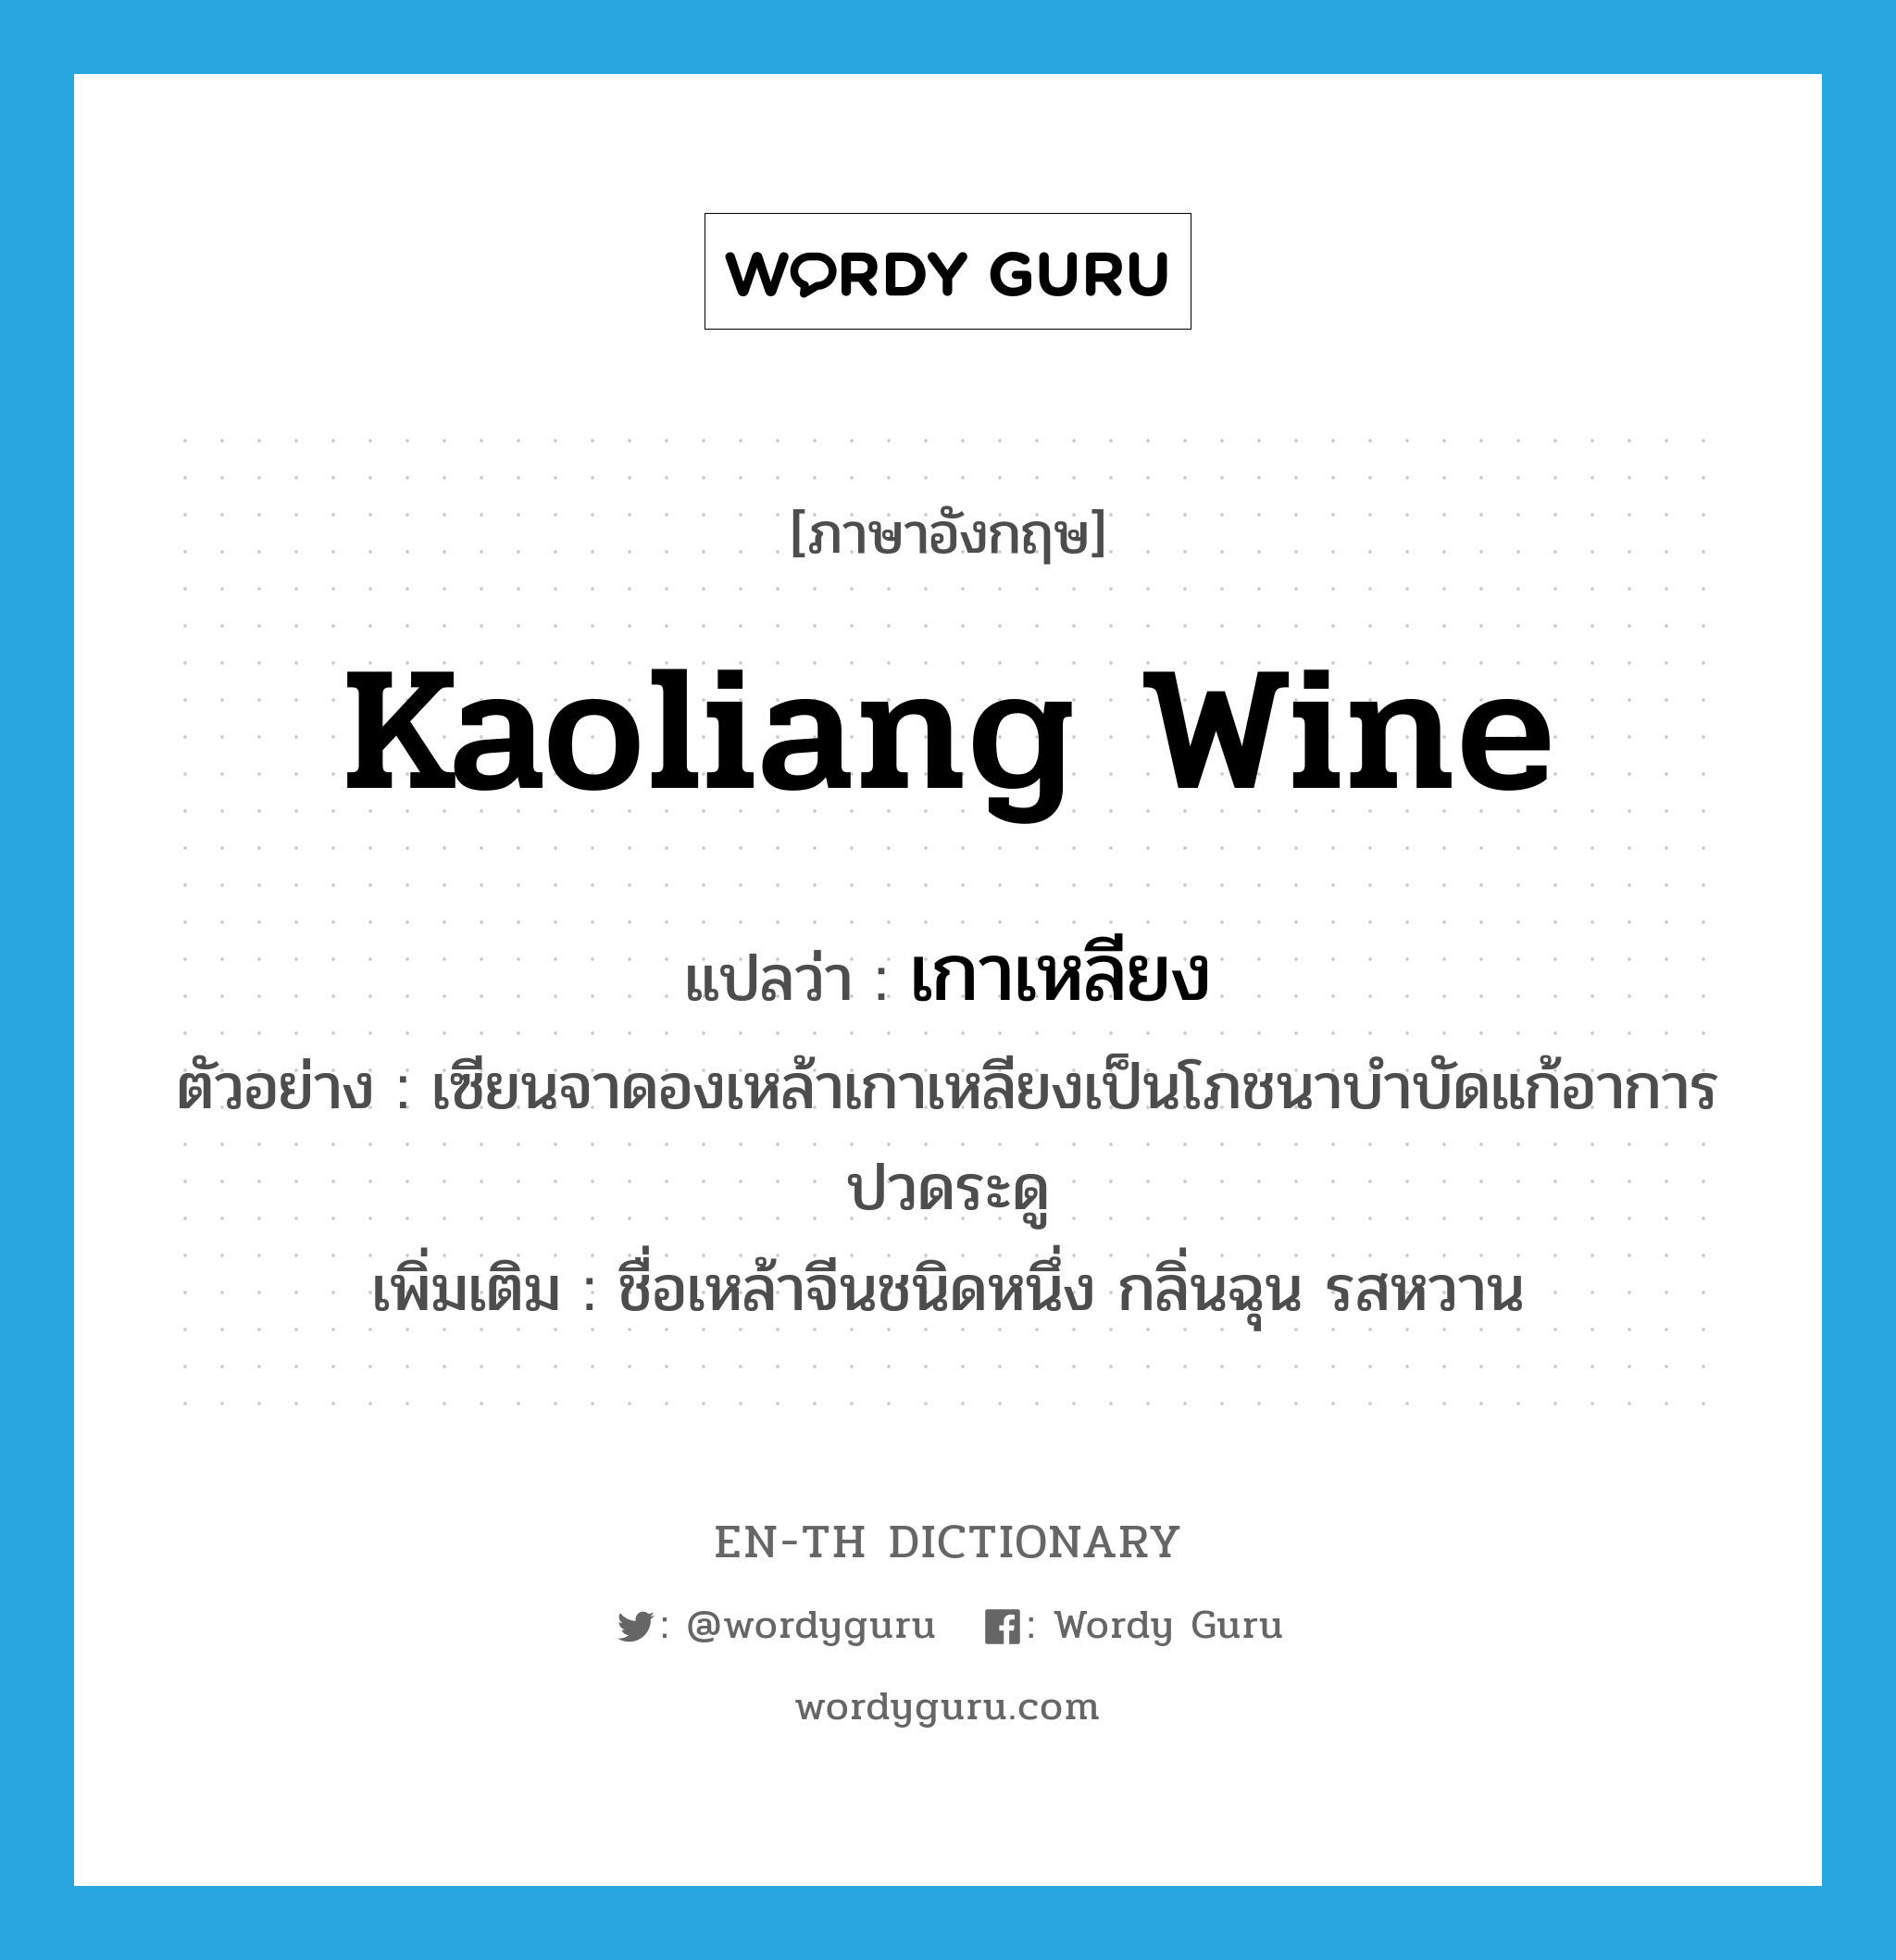 เกาเหลียง ภาษาอังกฤษ?, คำศัพท์ภาษาอังกฤษ เกาเหลียง แปลว่า Kaoliang wine ประเภท N ตัวอย่าง เซียนจาดองเหล้าเกาเหลียงเป็นโภชนาบำบัดแก้อาการปวดระดู เพิ่มเติม ชื่อเหล้าจีนชนิดหนึ่ง กลิ่นฉุน รสหวาน หมวด N